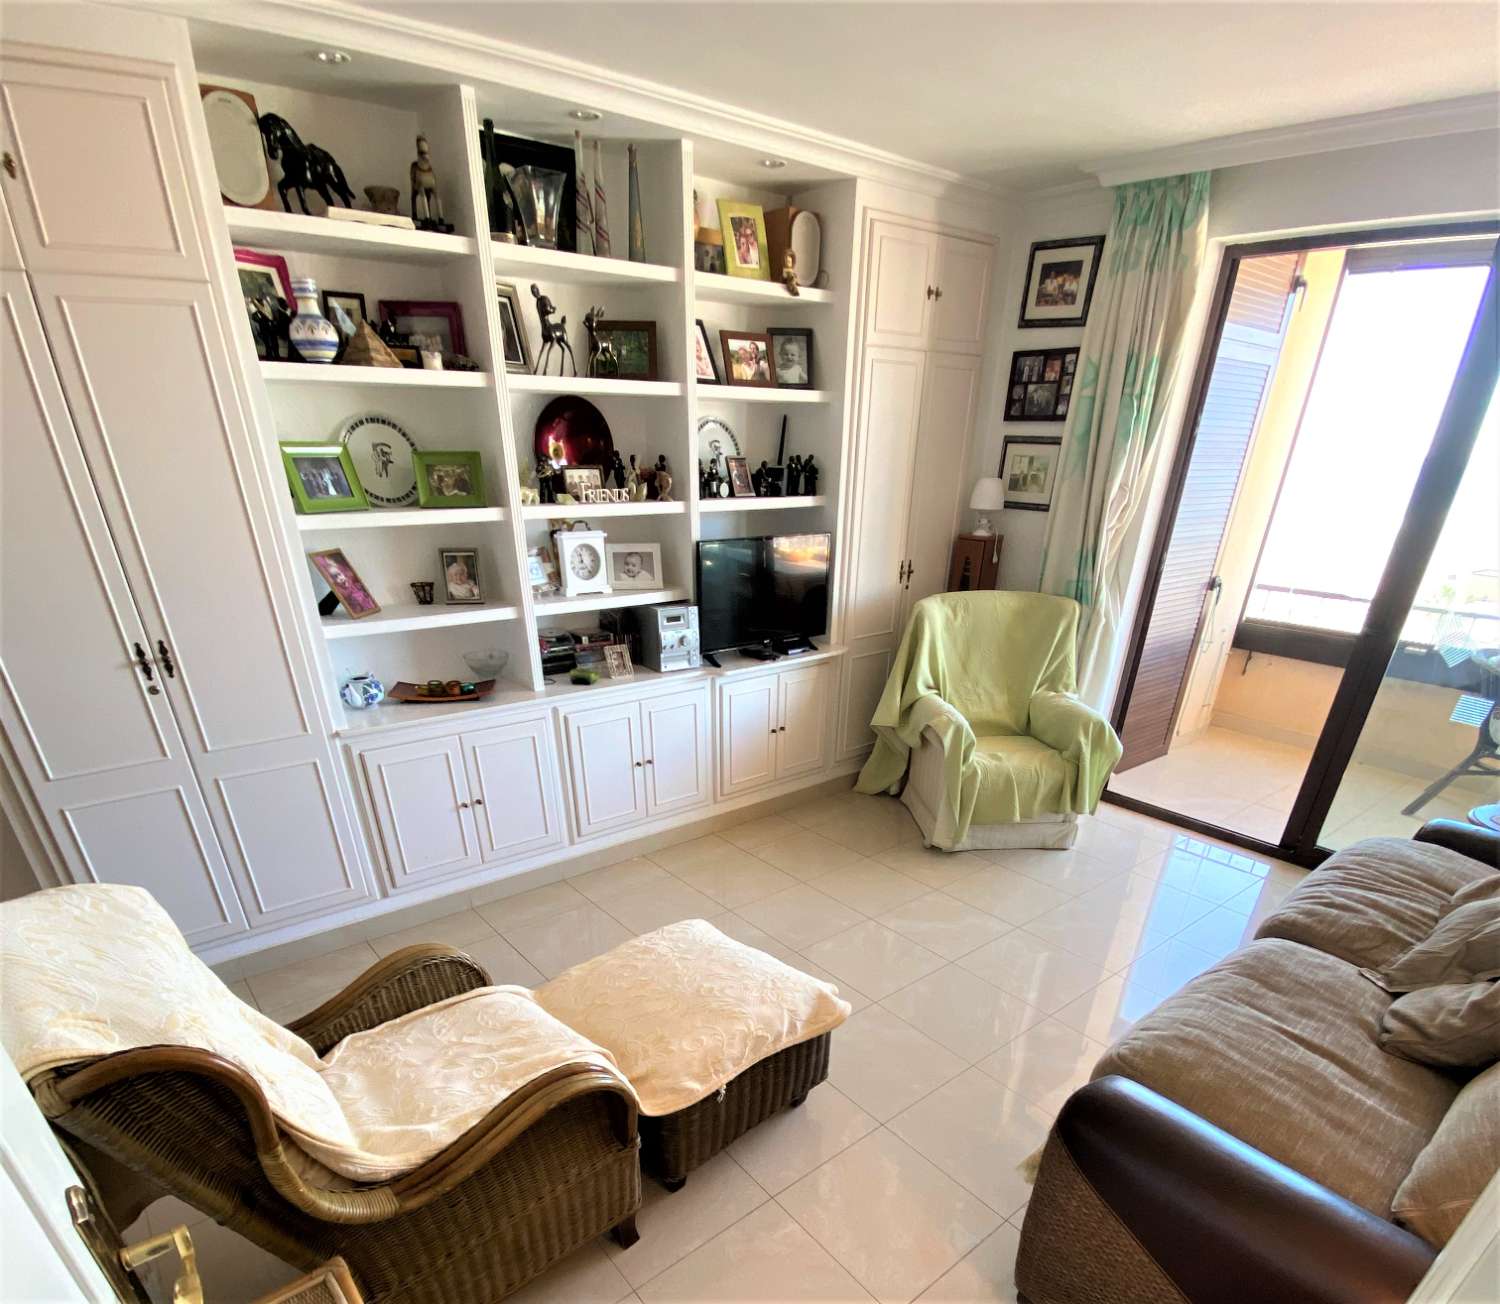 Fuengirola, 1 dormitorio, vistas panorámicas, Wi-Fi Gratis, piscina, Primera línea playa.